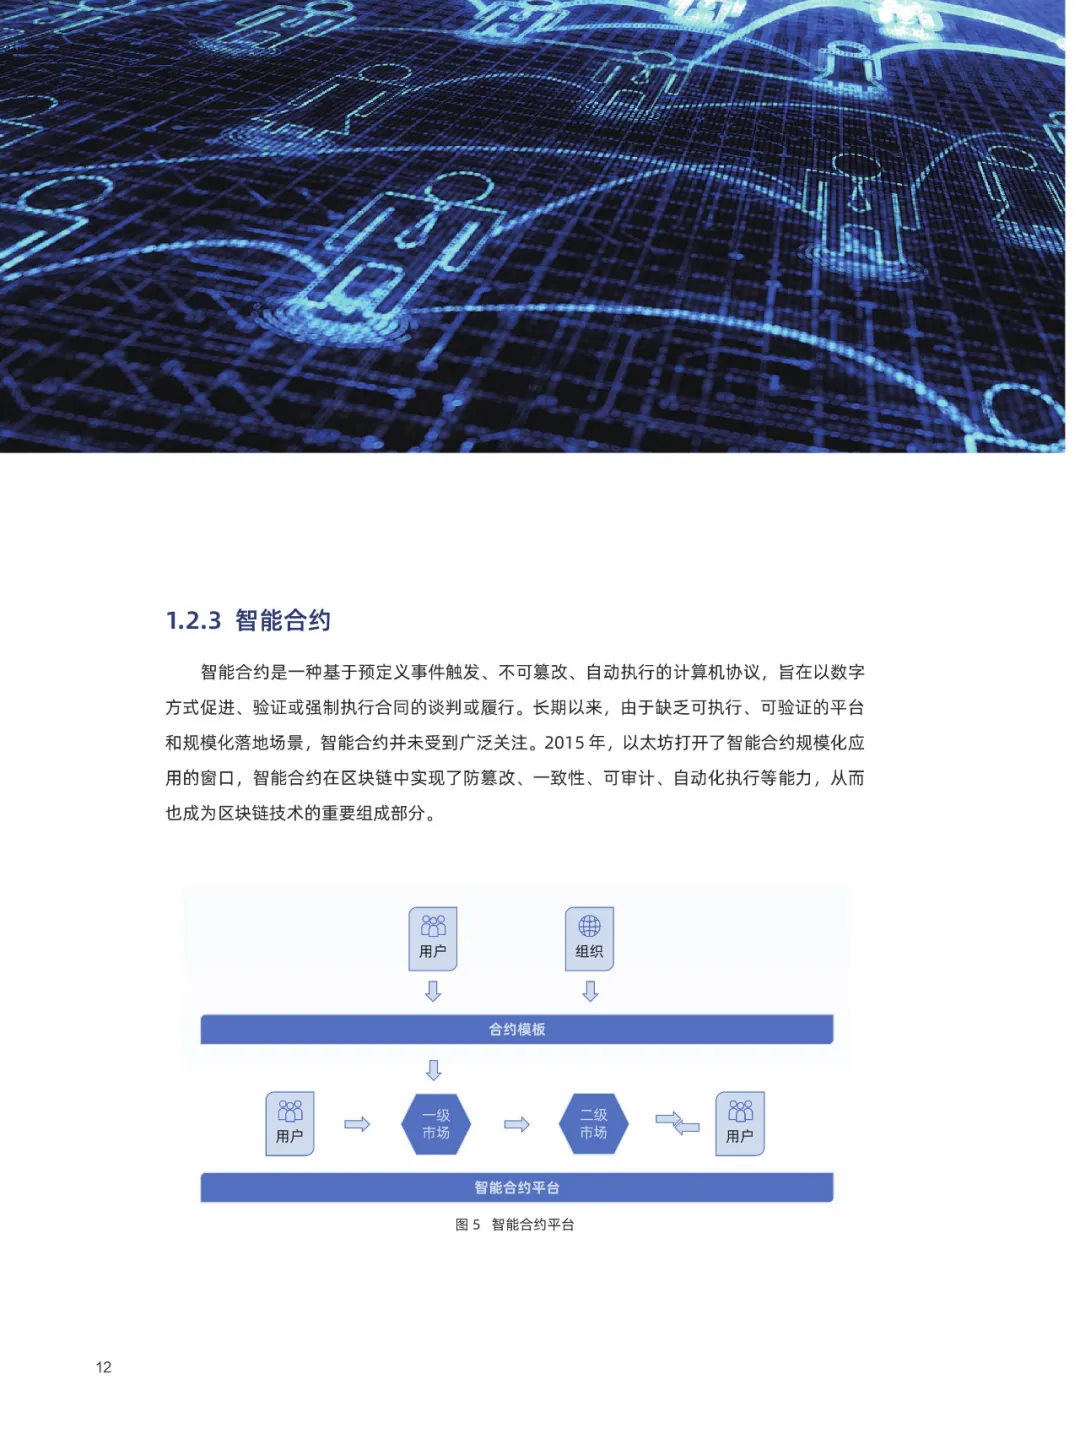 信任经济的崛起——2020中国区块链发展报告_加密算法_14